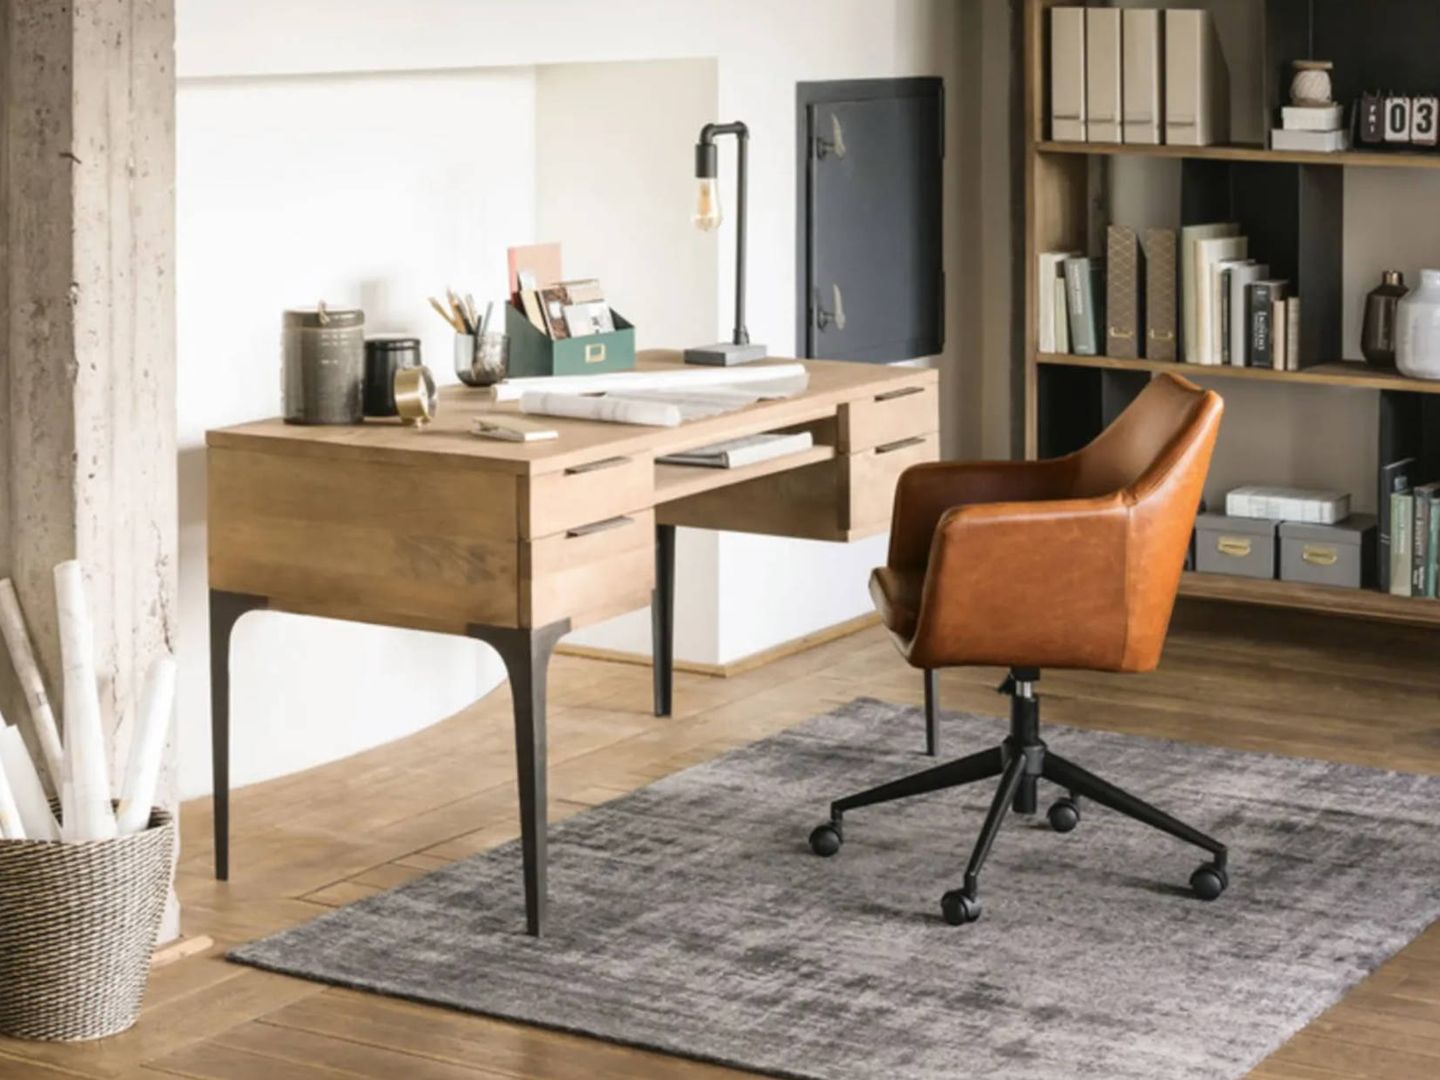 Busca la mejor silla para tu despacho, como esta de Maisons du Monde. (Cortesía)